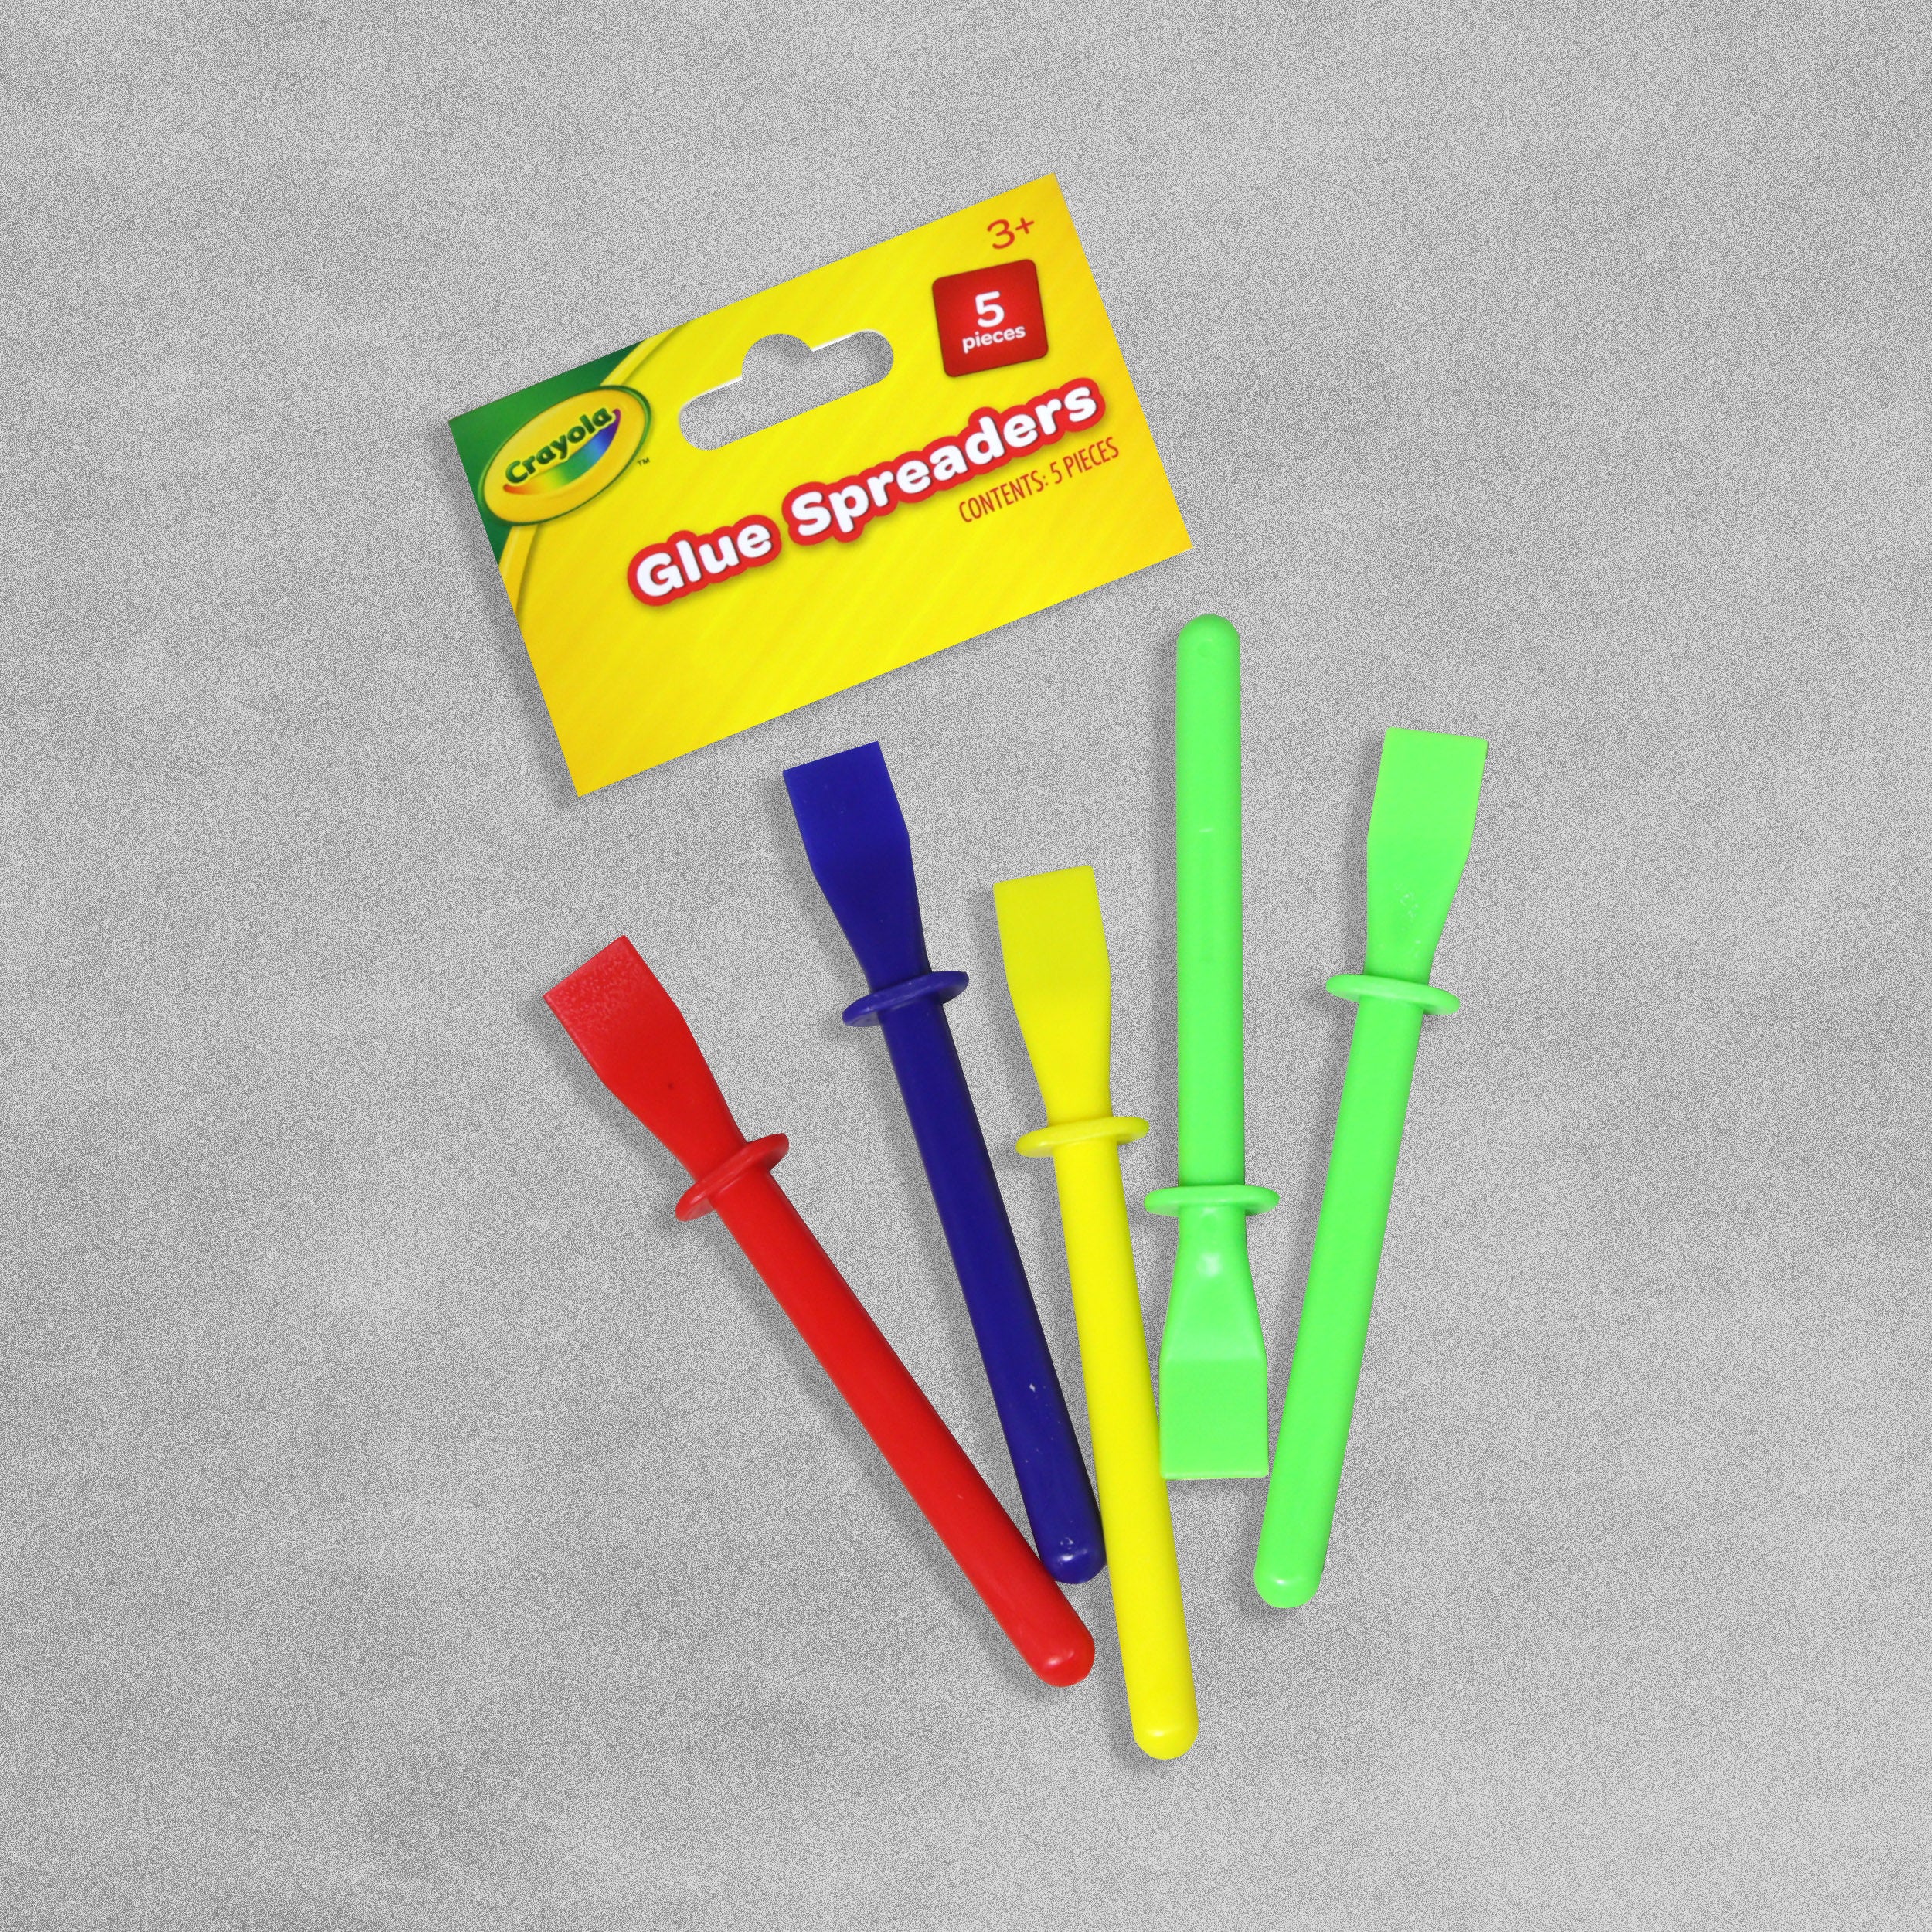 Crayola Glue Spreaders - Pack of 5